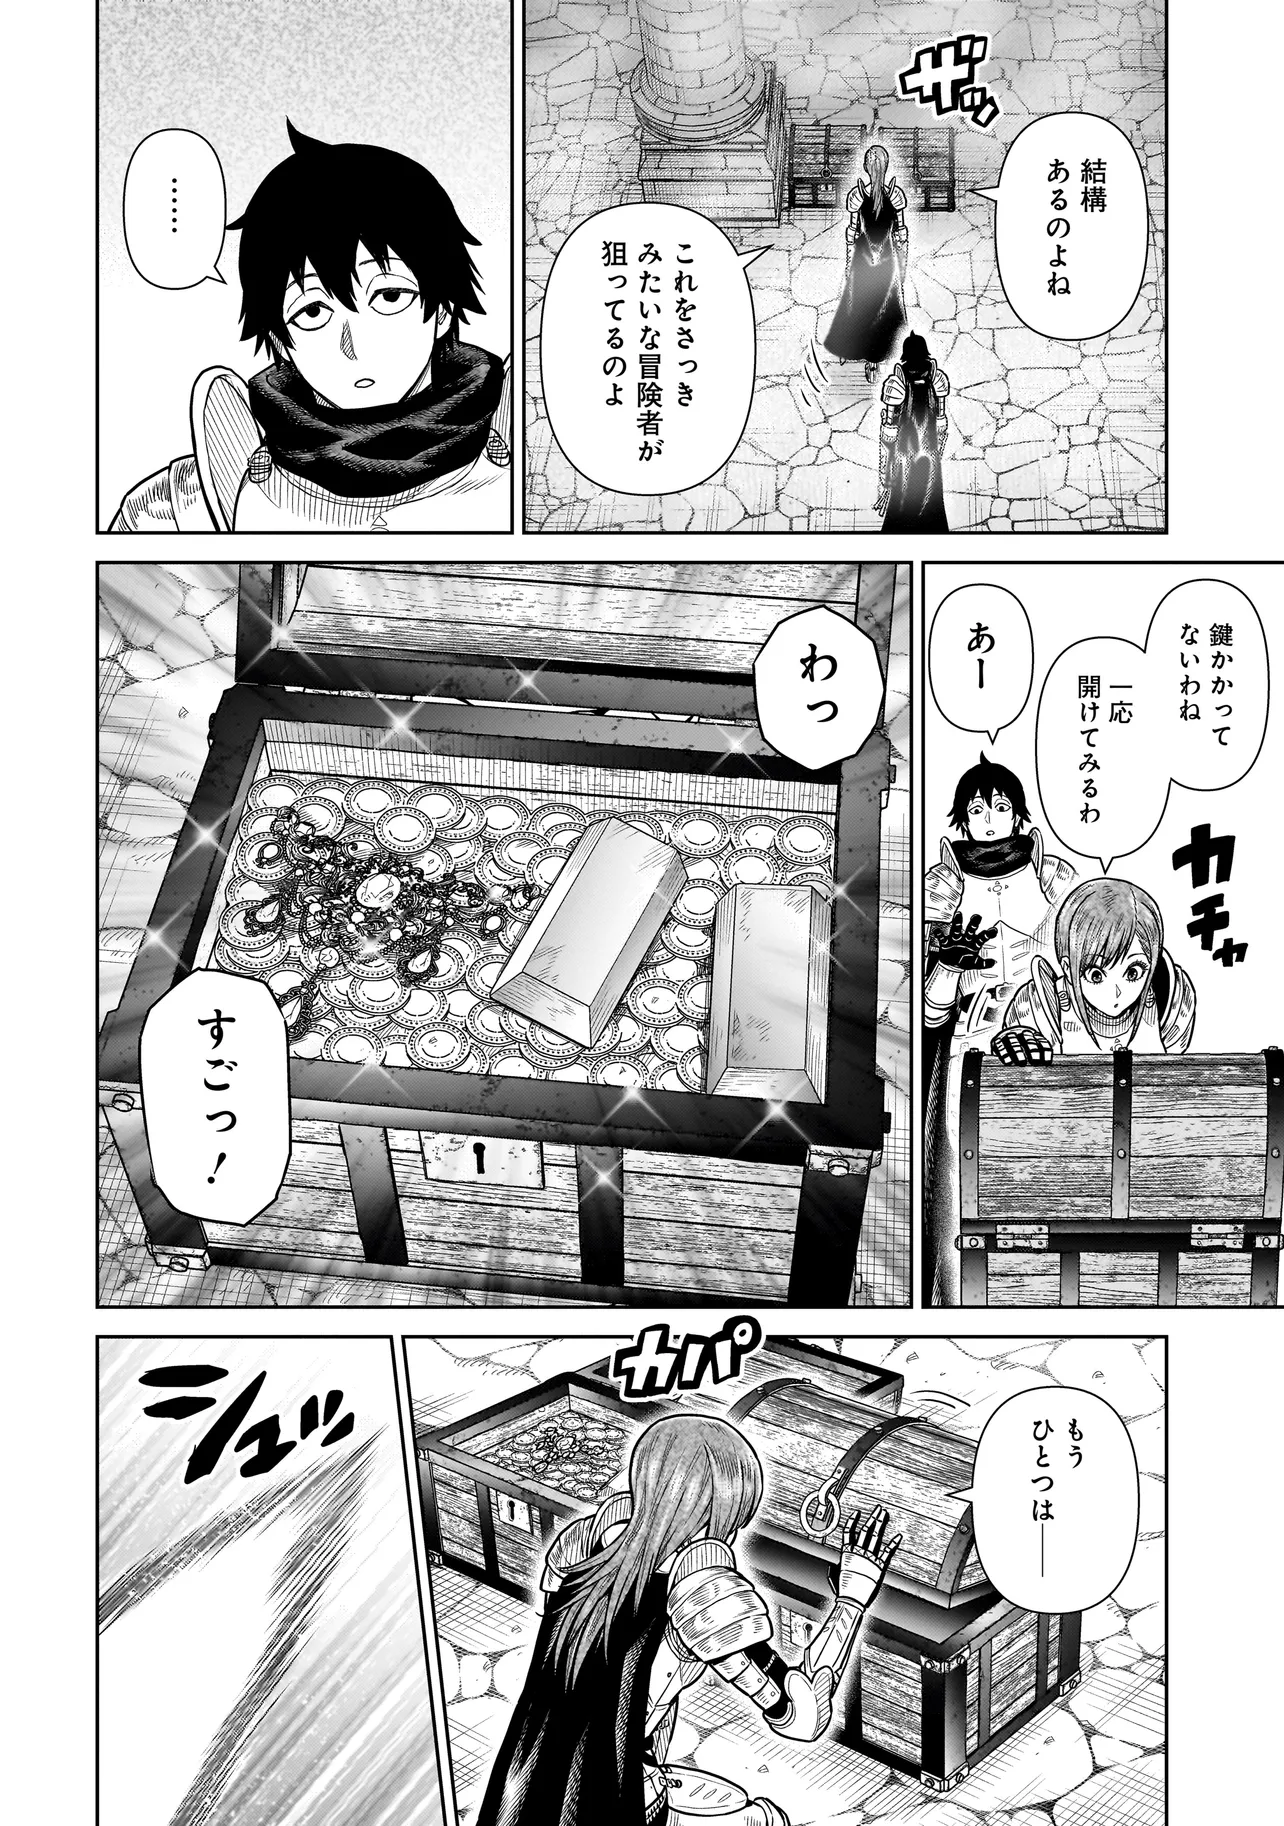 Ninja no Kishi - Chapter 4 - Page 2